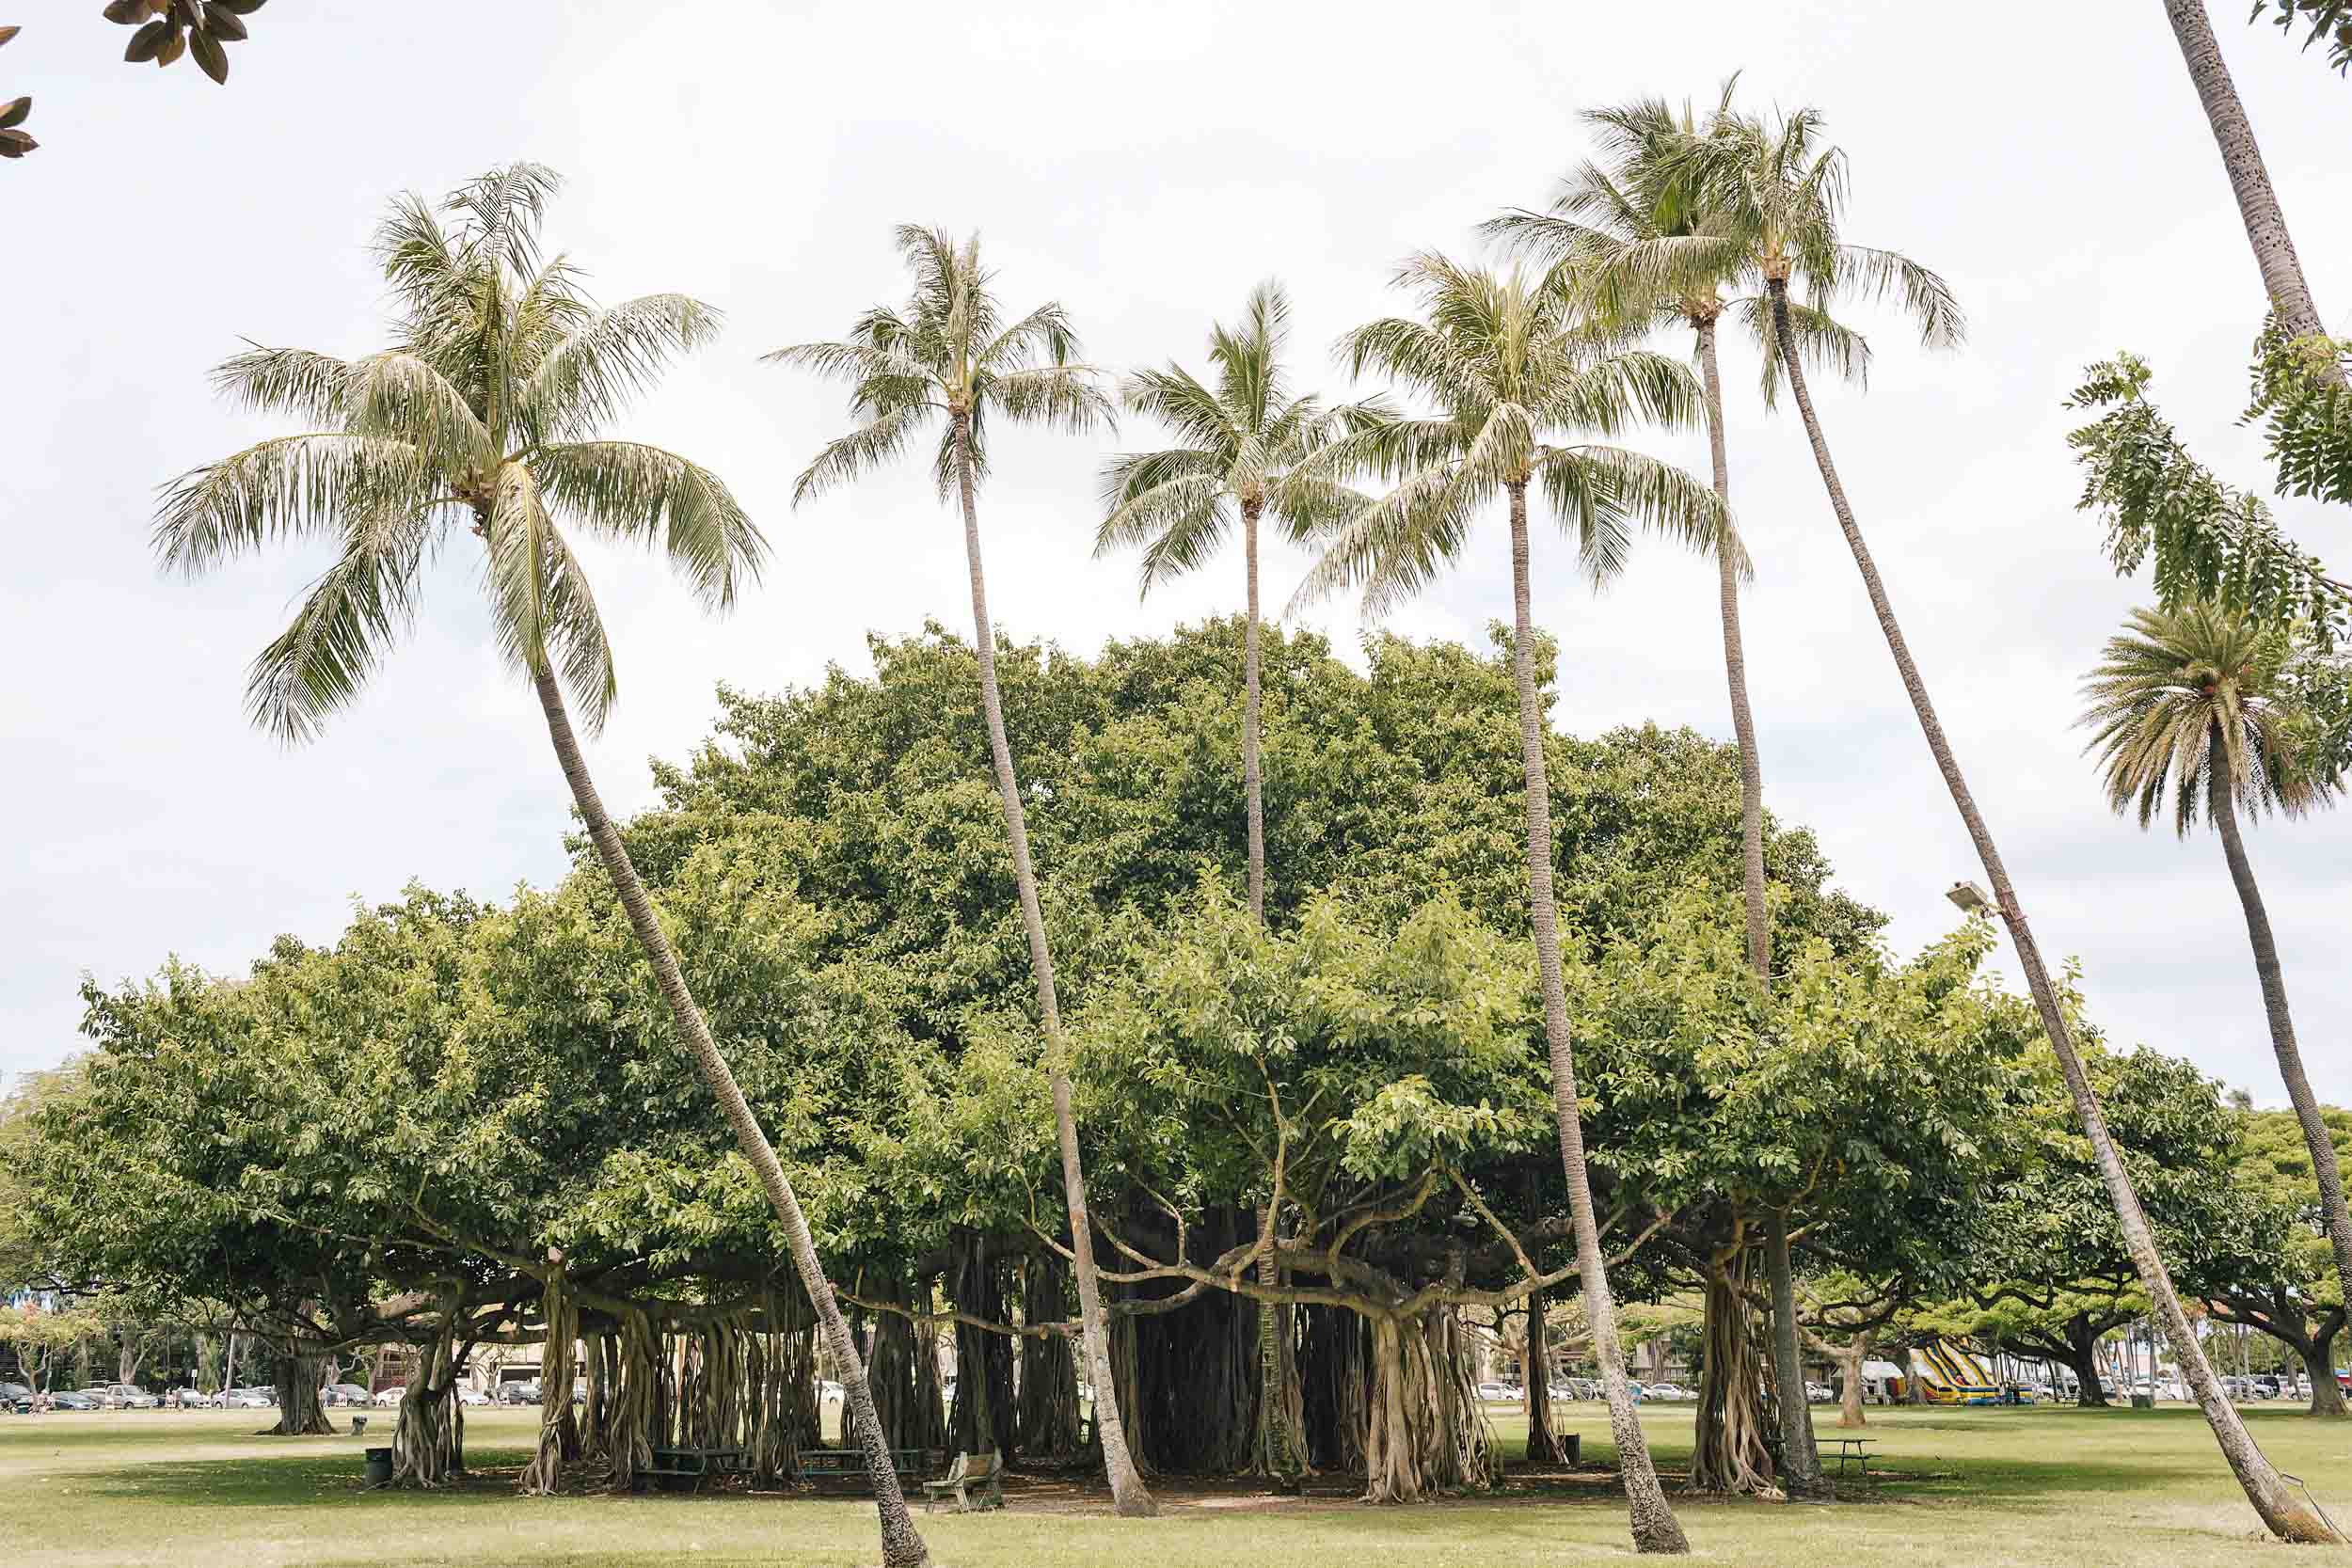 A banyan tree in Hawaii